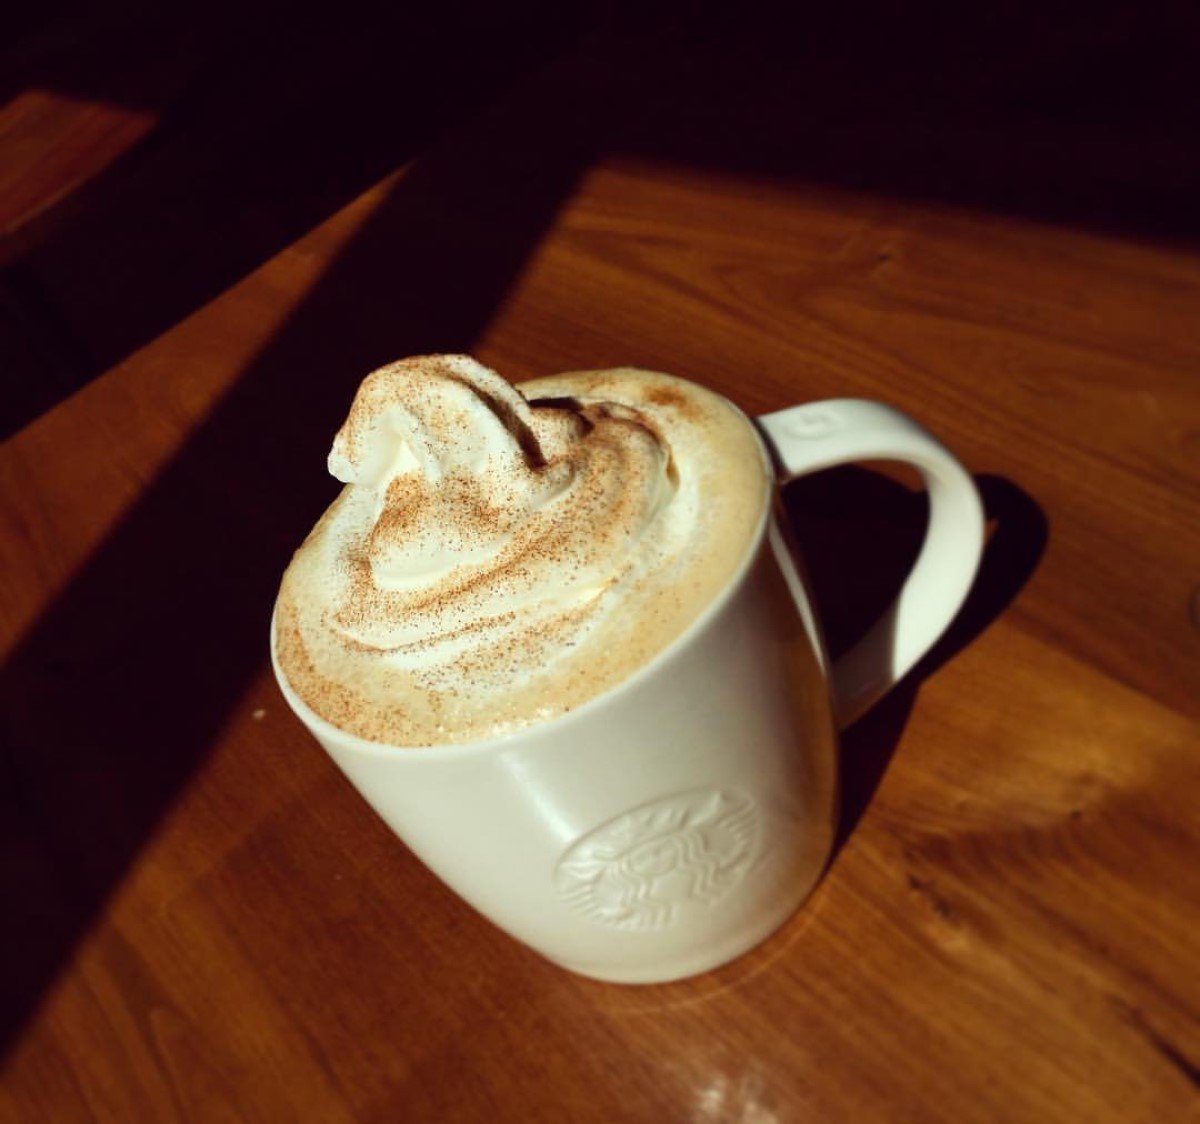 hot starbucks cinnamon dolce latte in white starbucks ceramic mug on wooden table